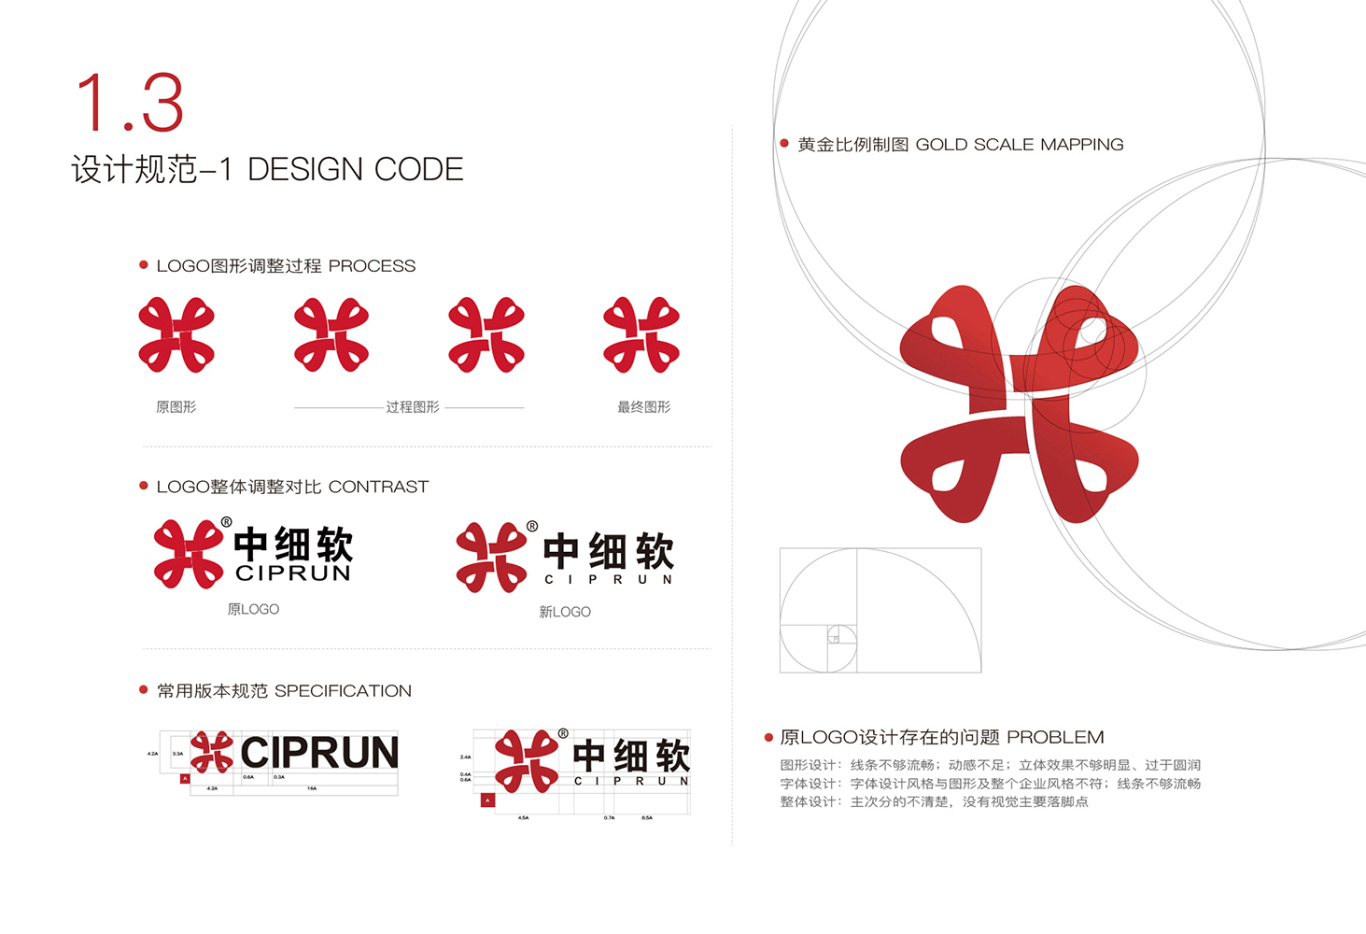 中细软集团 logo/vi 及其他宣传设计图2